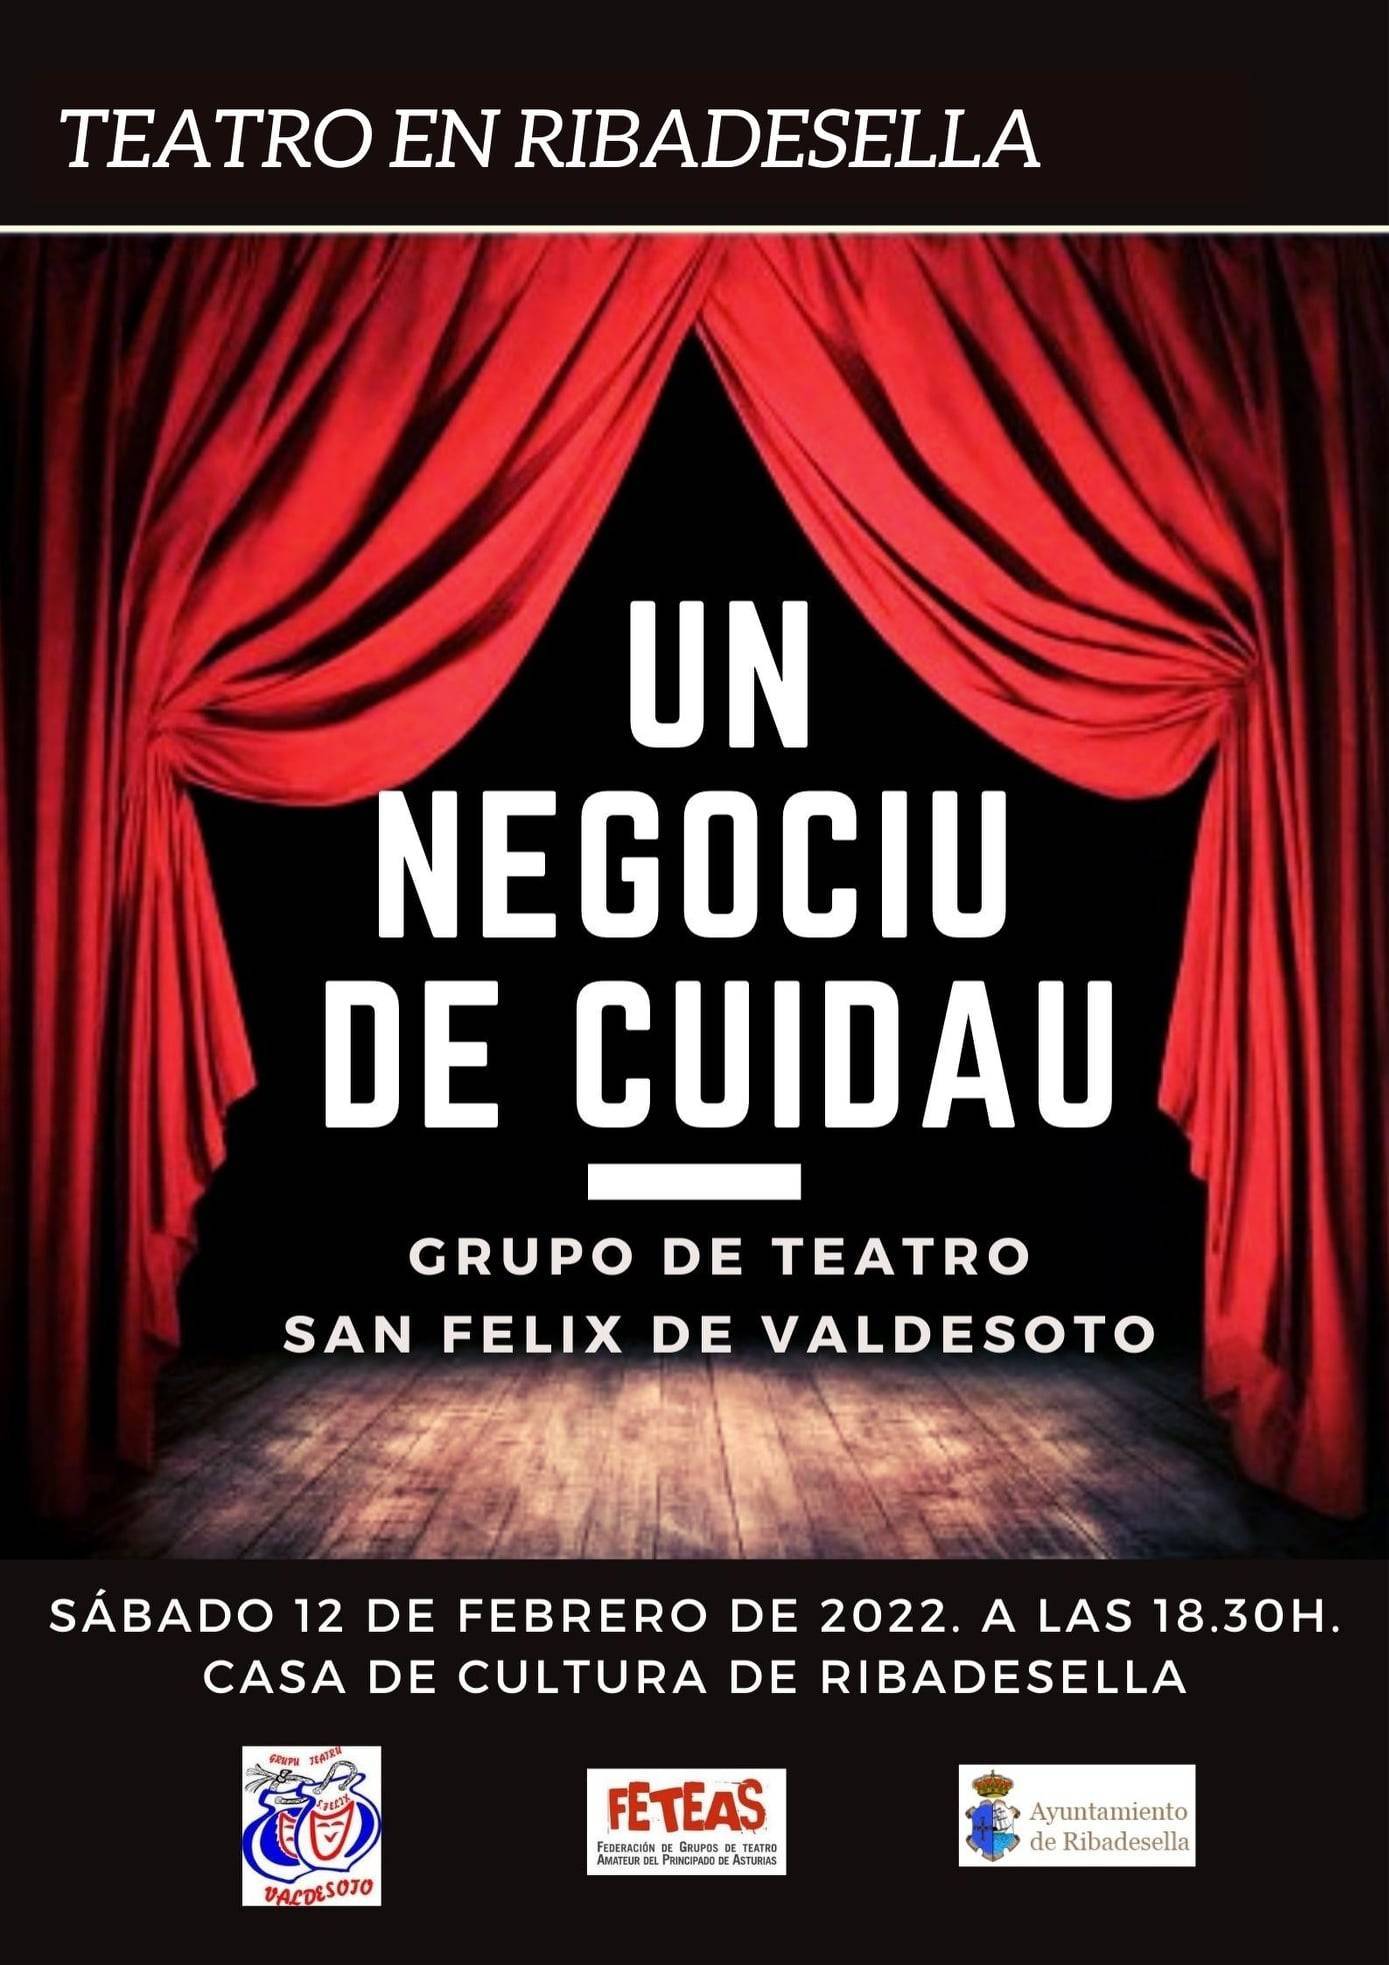 'Un negociu de cuidau' (2022) - Ribadesella (Asturias)